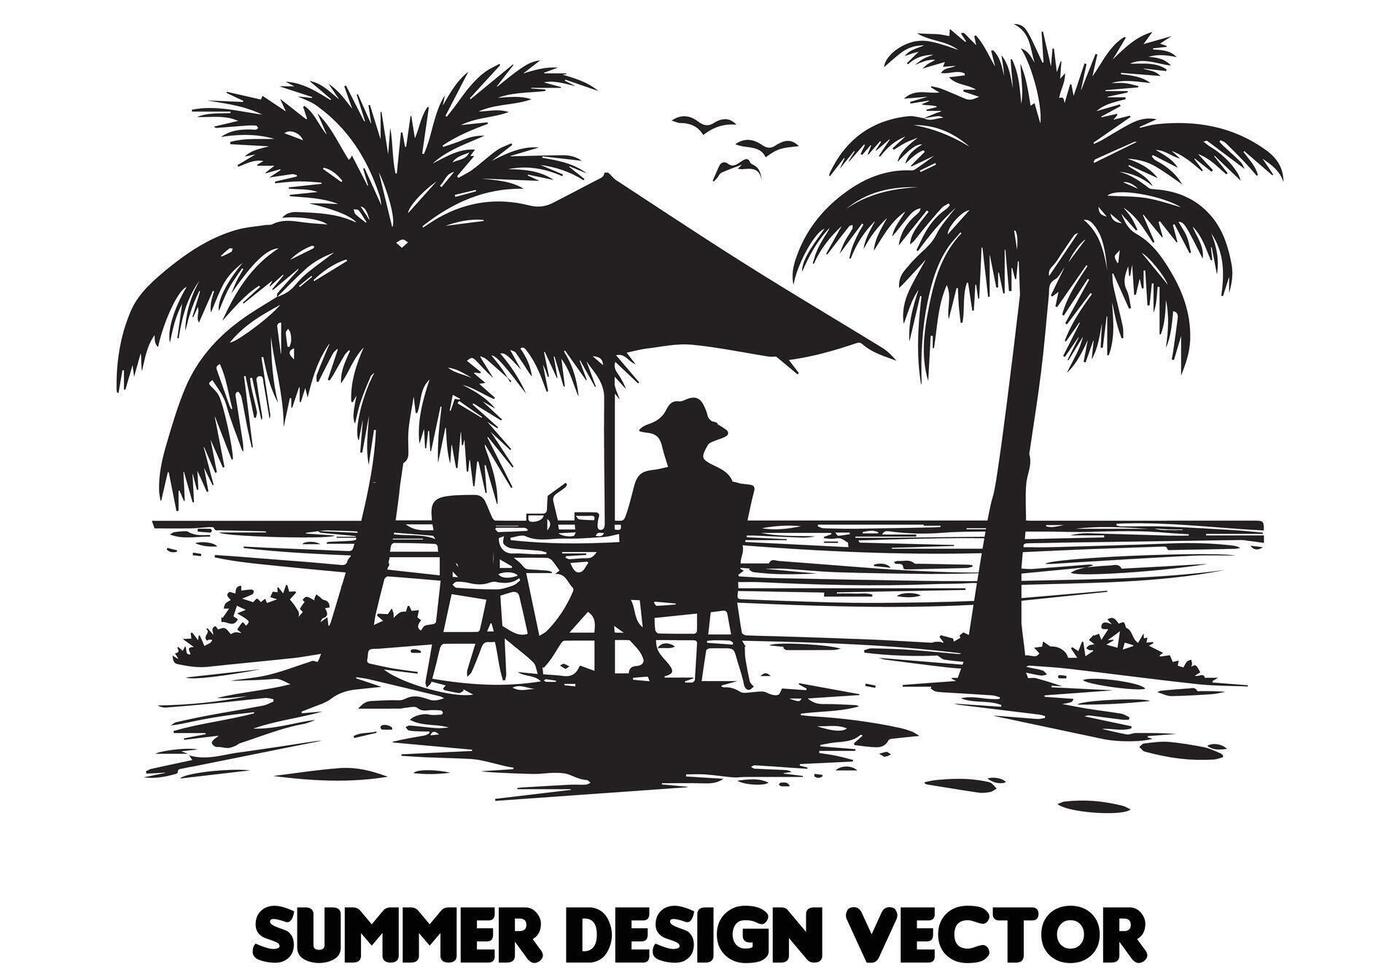 Sommer- Design Palme Baum Sitzung auf Stuhl Vorderseite Tabelle und Regenschirm Mann Strand zum drucken auf Nachfrage schwarz Fett gedruckt einfach Gliederung kostenlos Design vektor